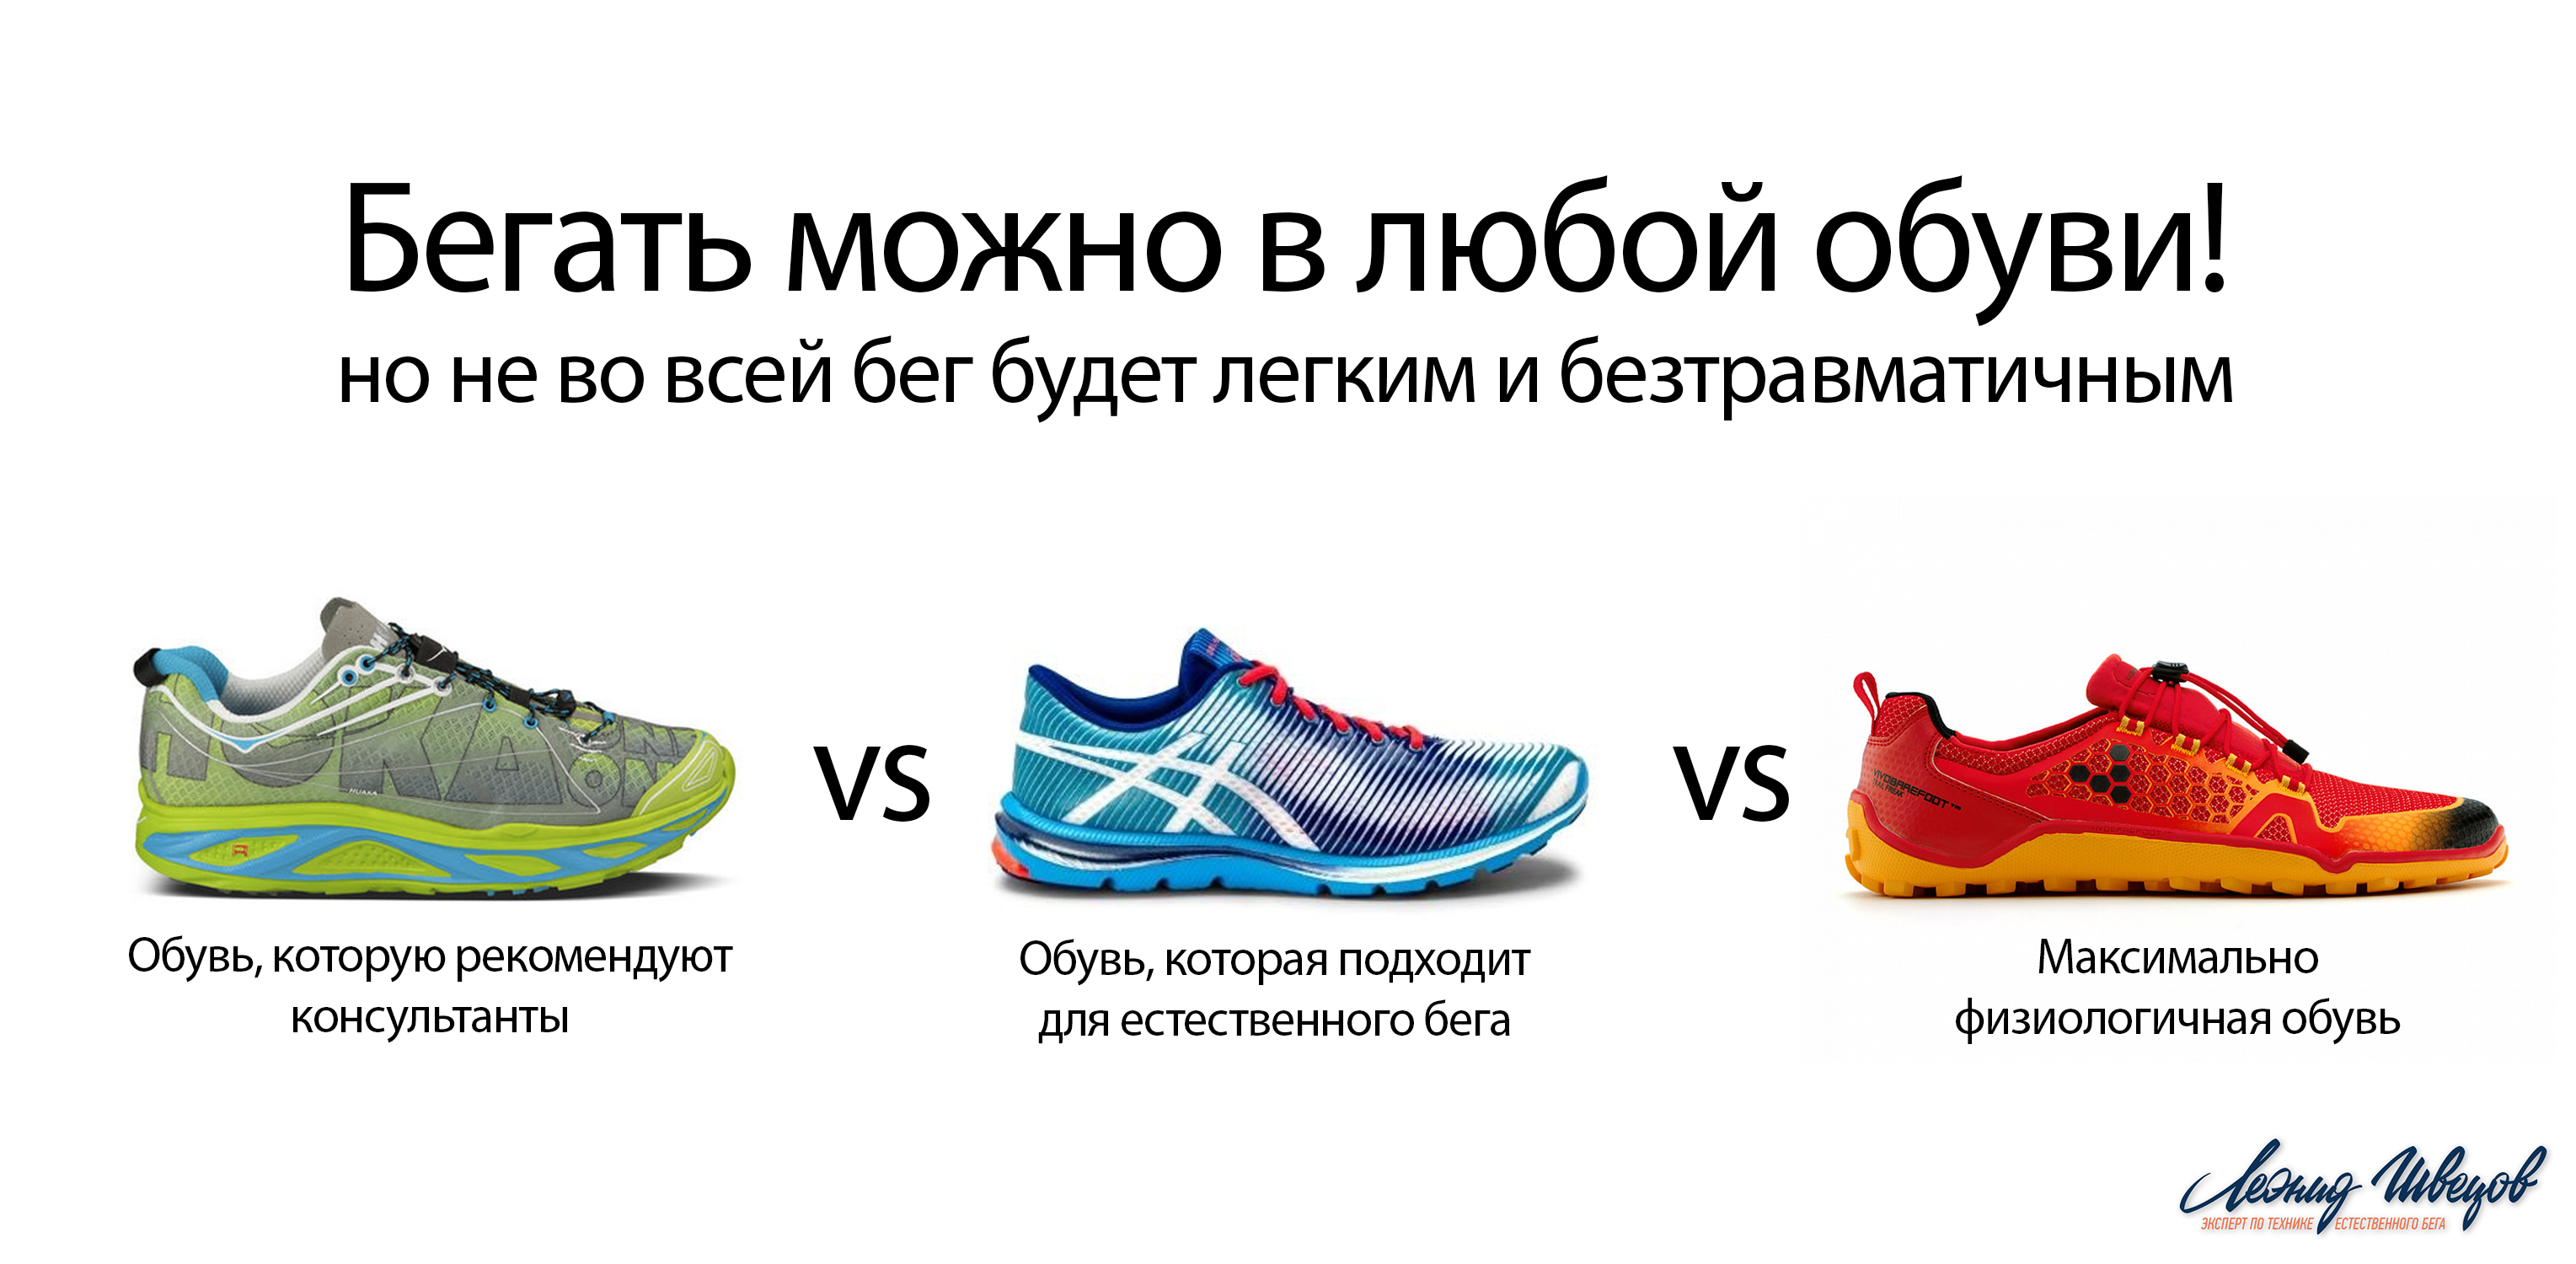 Как выбрать кроссовки для бега по пересеченной местности? — risk.ru